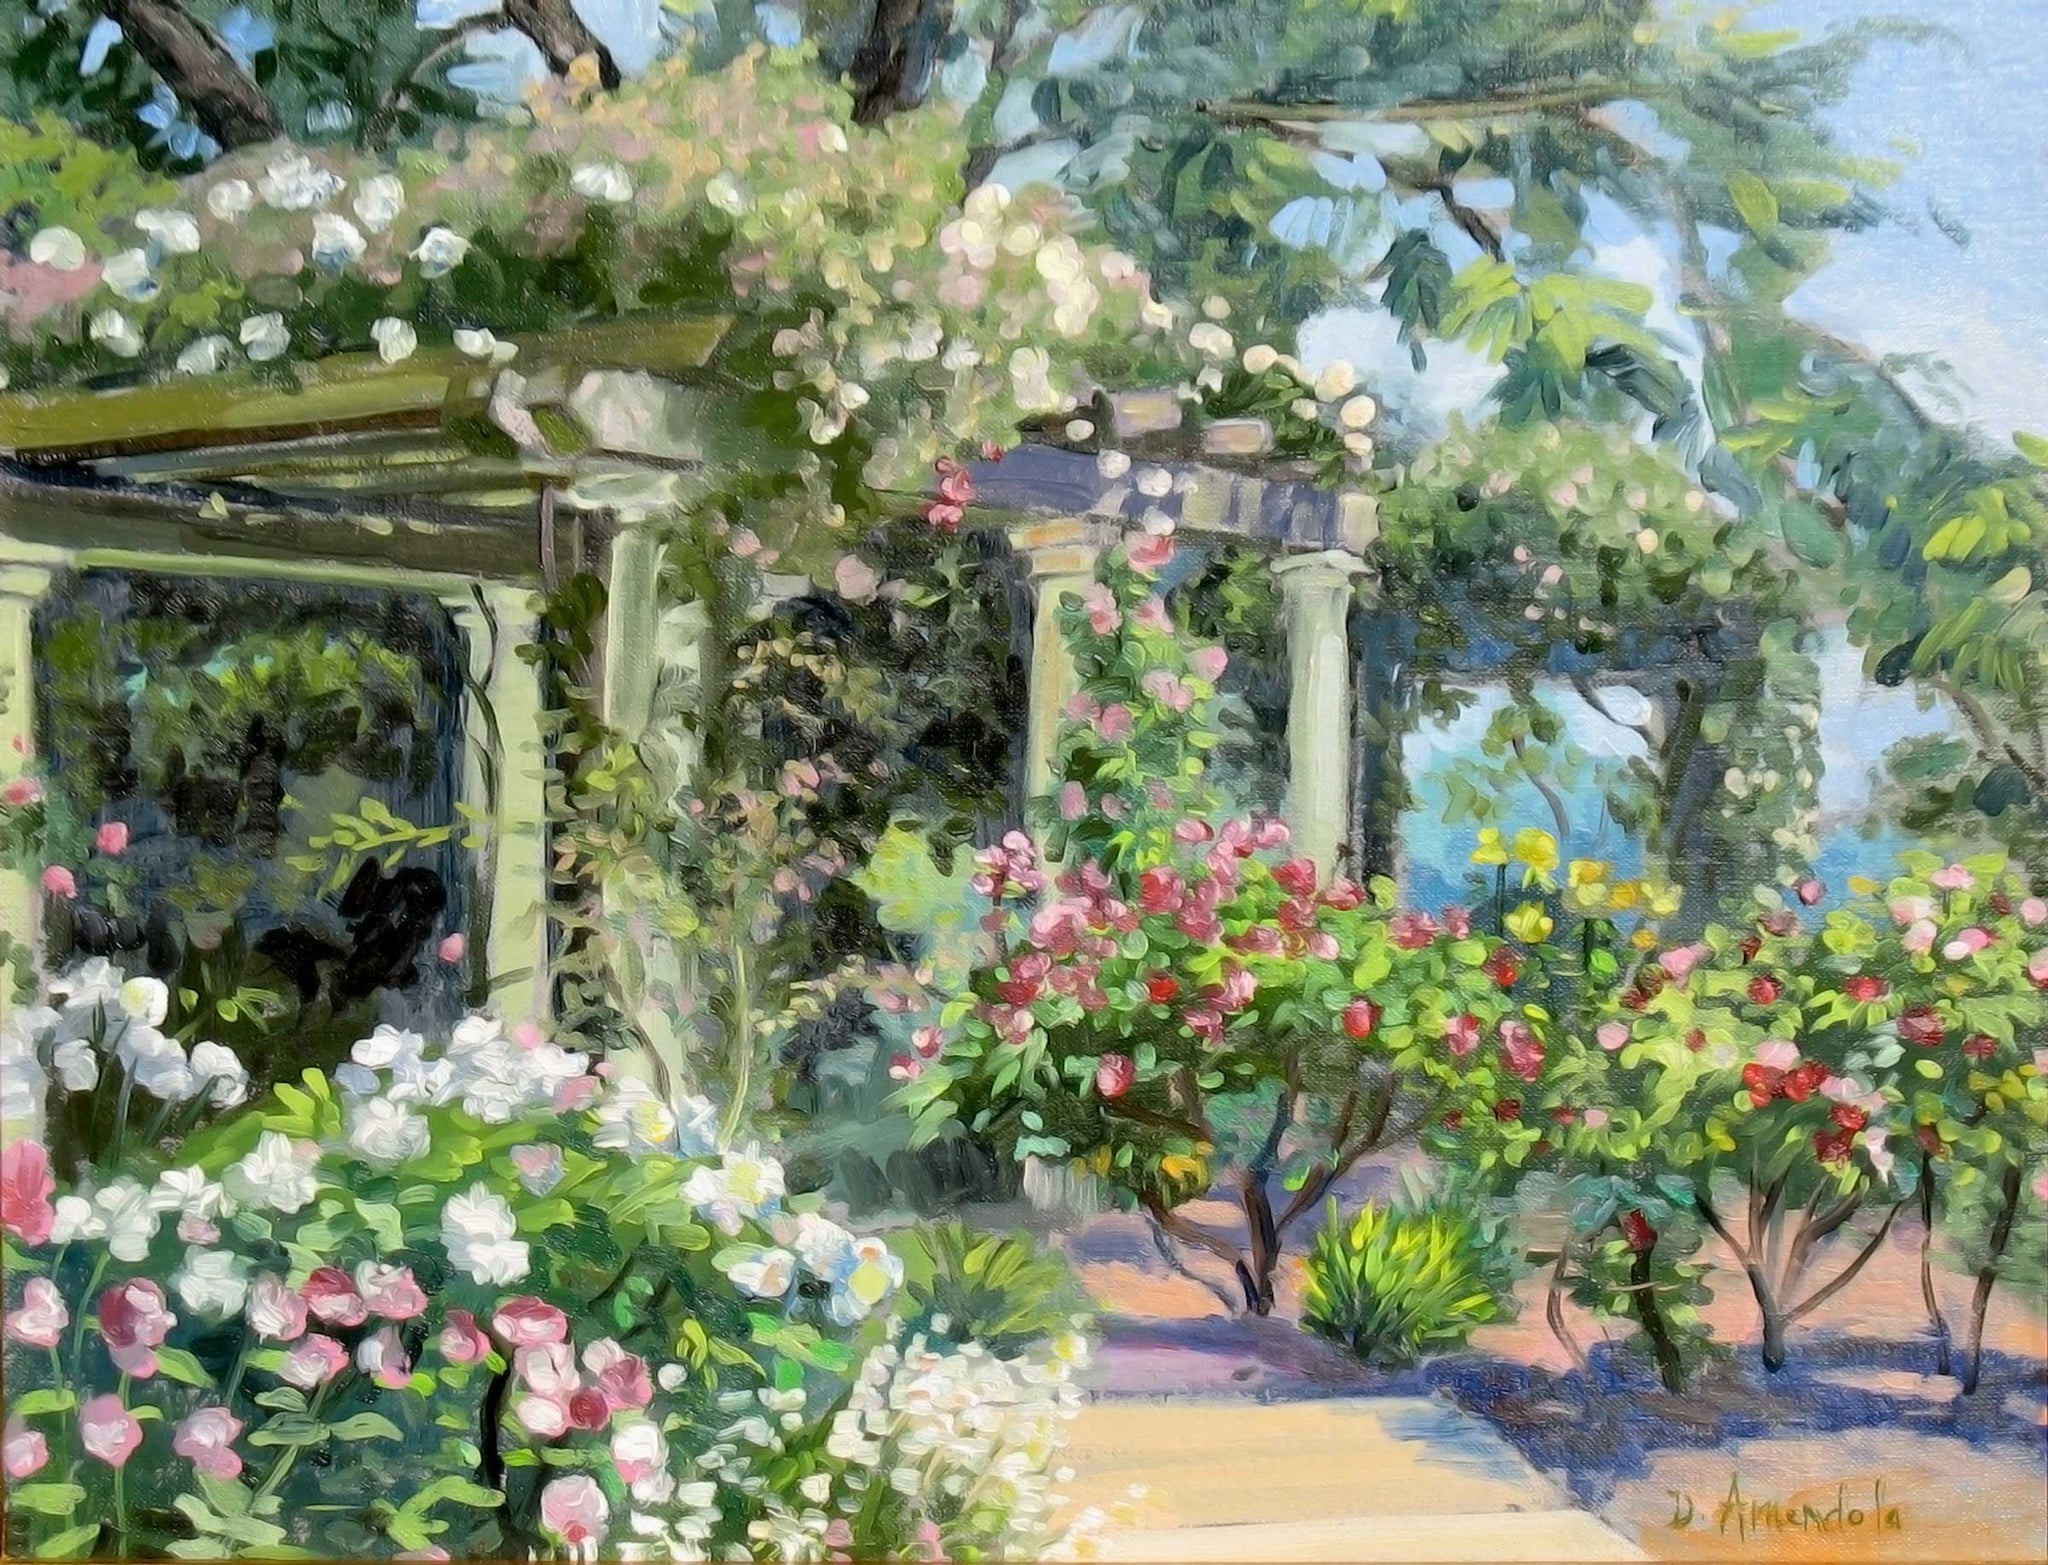 Rose garden with pergolas